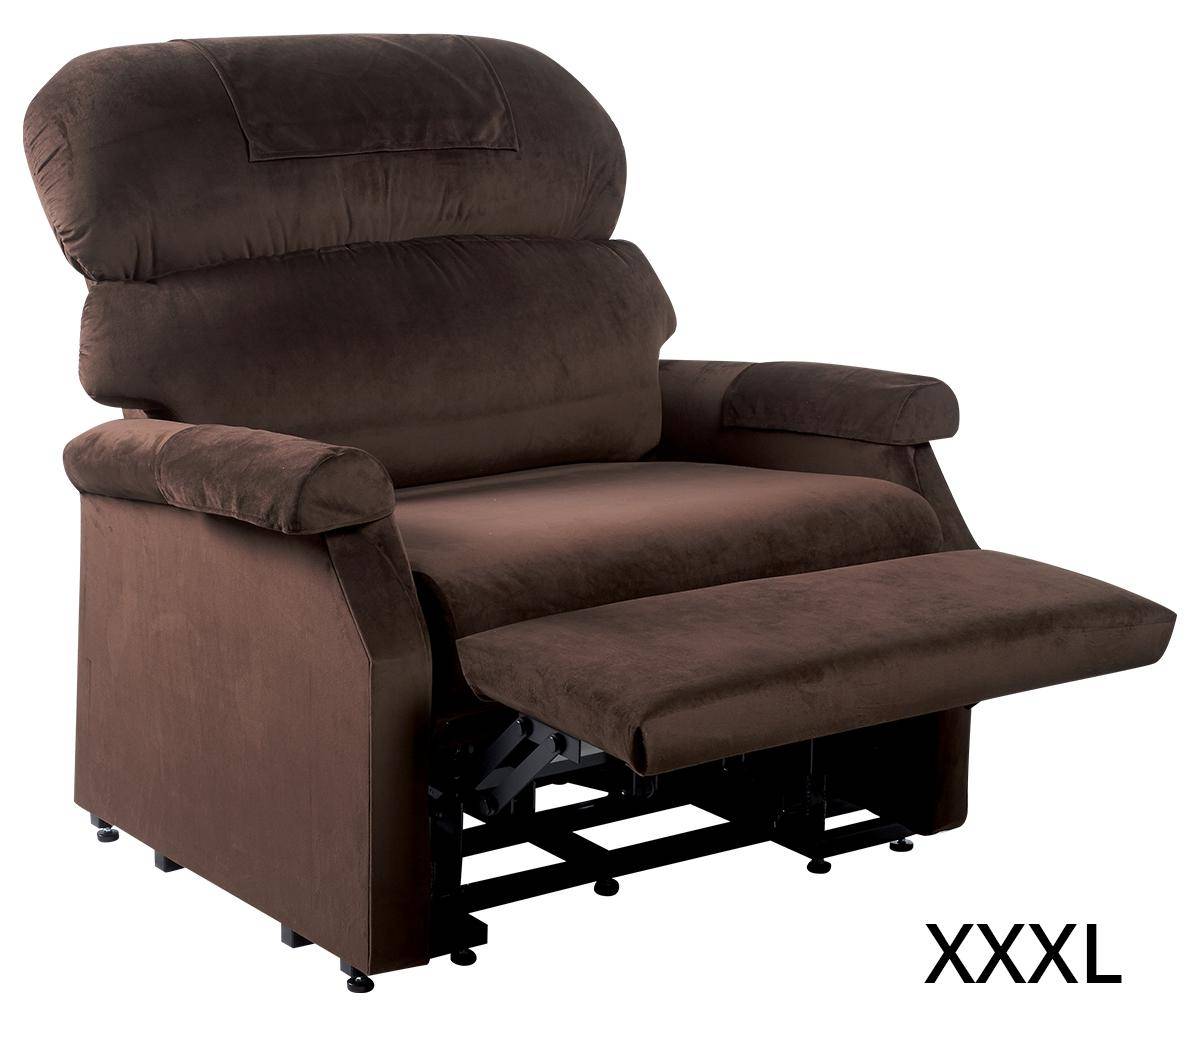 und von Sessel kaufen XXXL XL Sessel, XXL GOLDEN Sessel